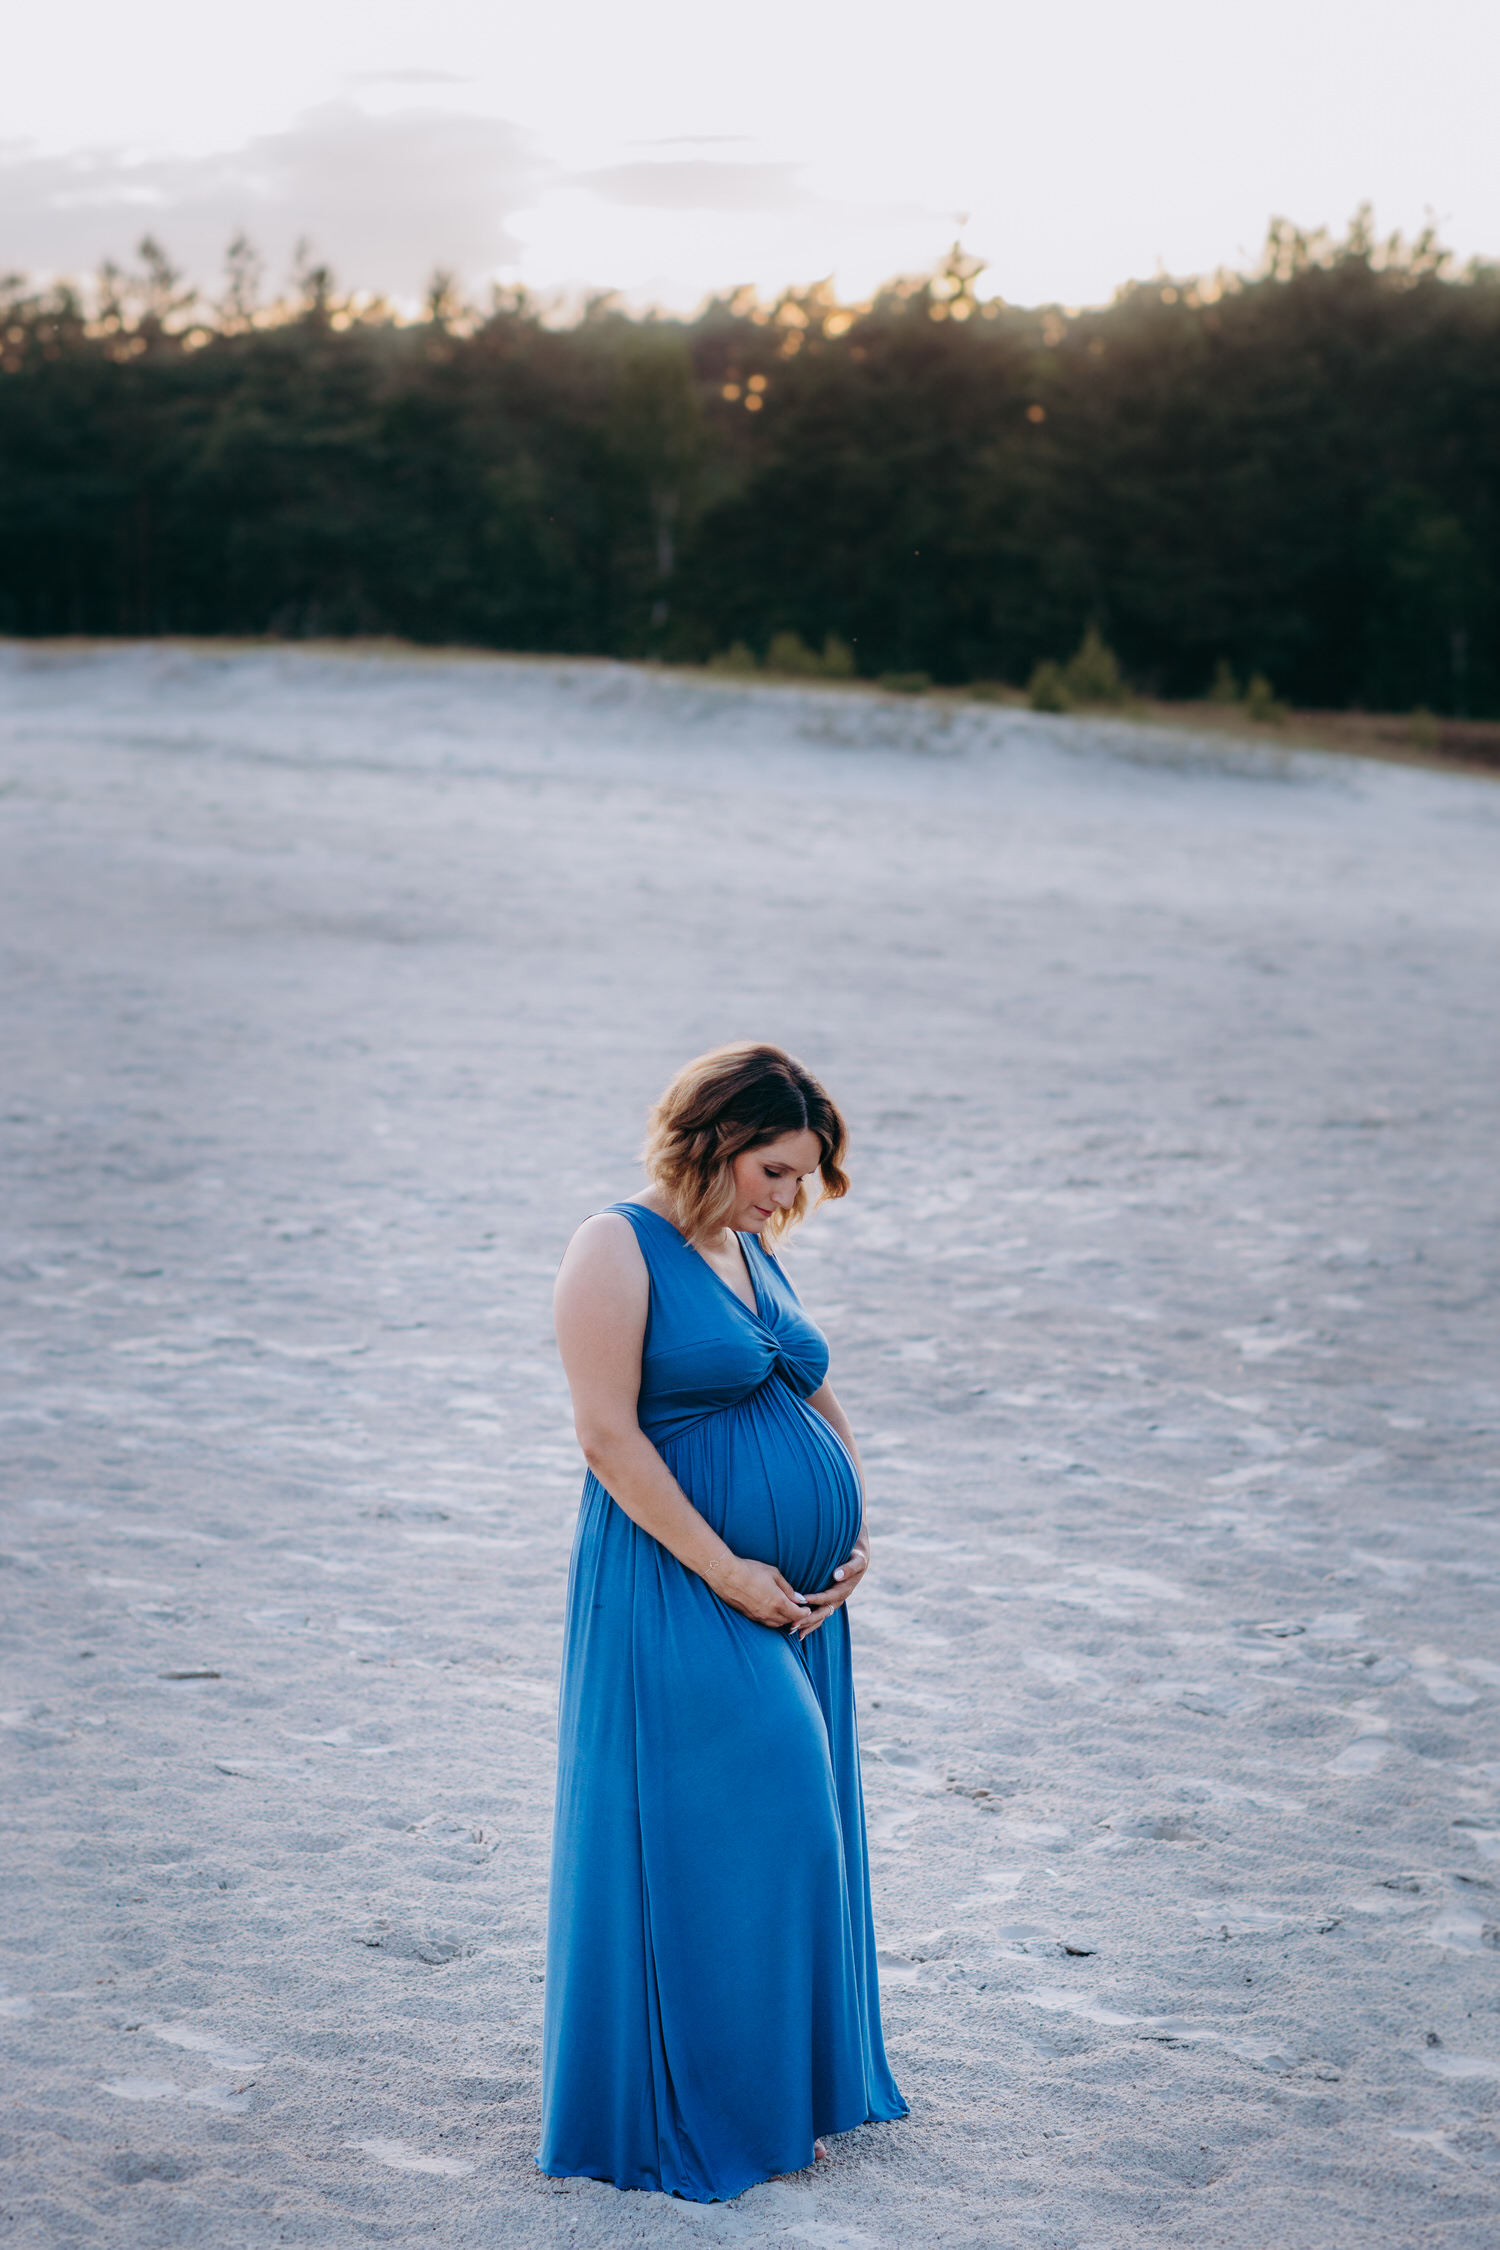 Schwangerschaftsbilder im wunderschönen Abendlicht